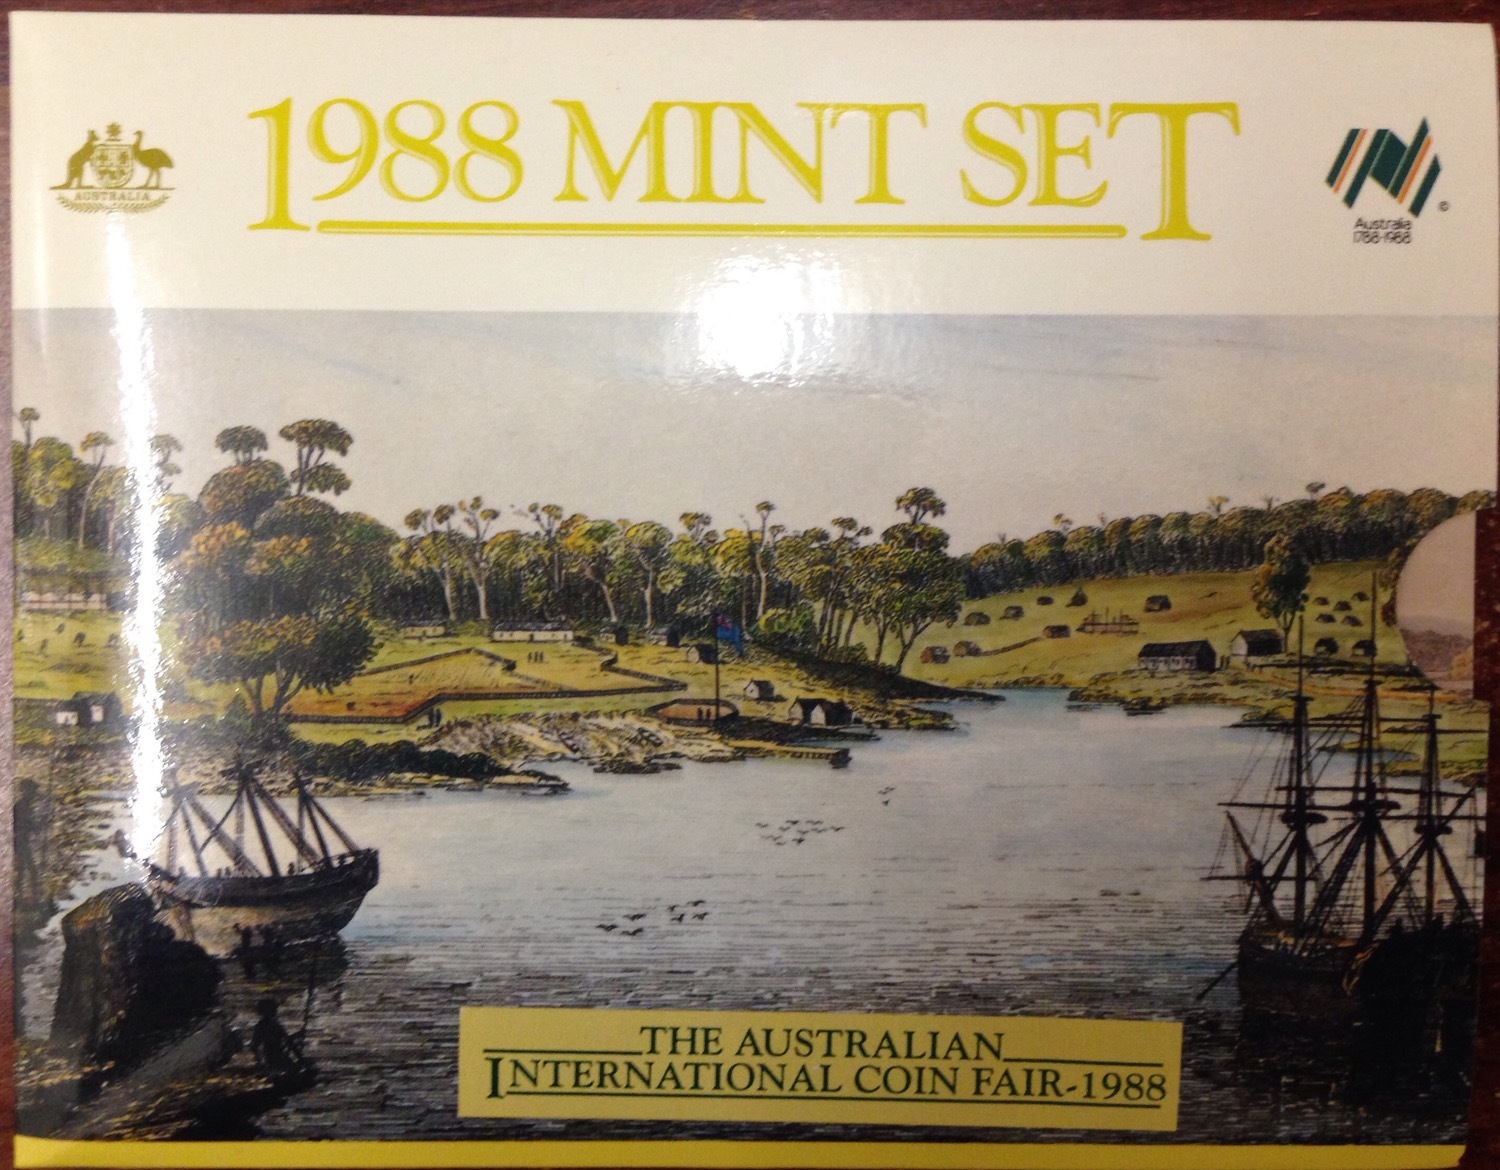 1988 Mint Set Bicentennial Sydney International Coin Fair product image